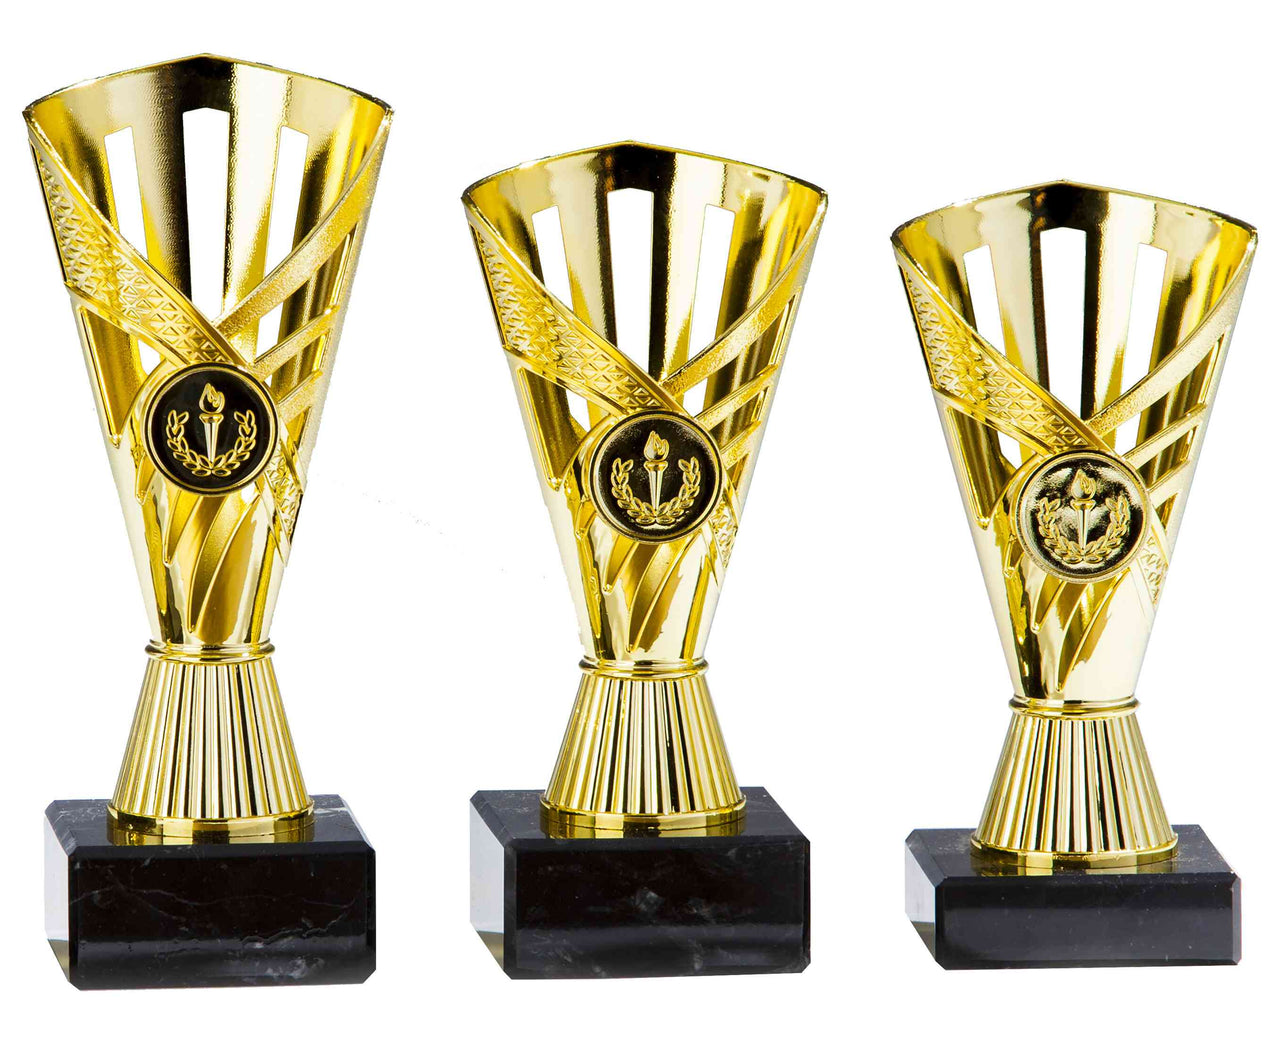 Drei Pokale aus hochwertigem Material von unterschiedlicher Größe auf schwarzen Sockeln vor einem weißen Hintergrund. POMEKI Pokale Dormagen 3-er Pokalserie 160 mm - 190 mm PK759150-3-E25.